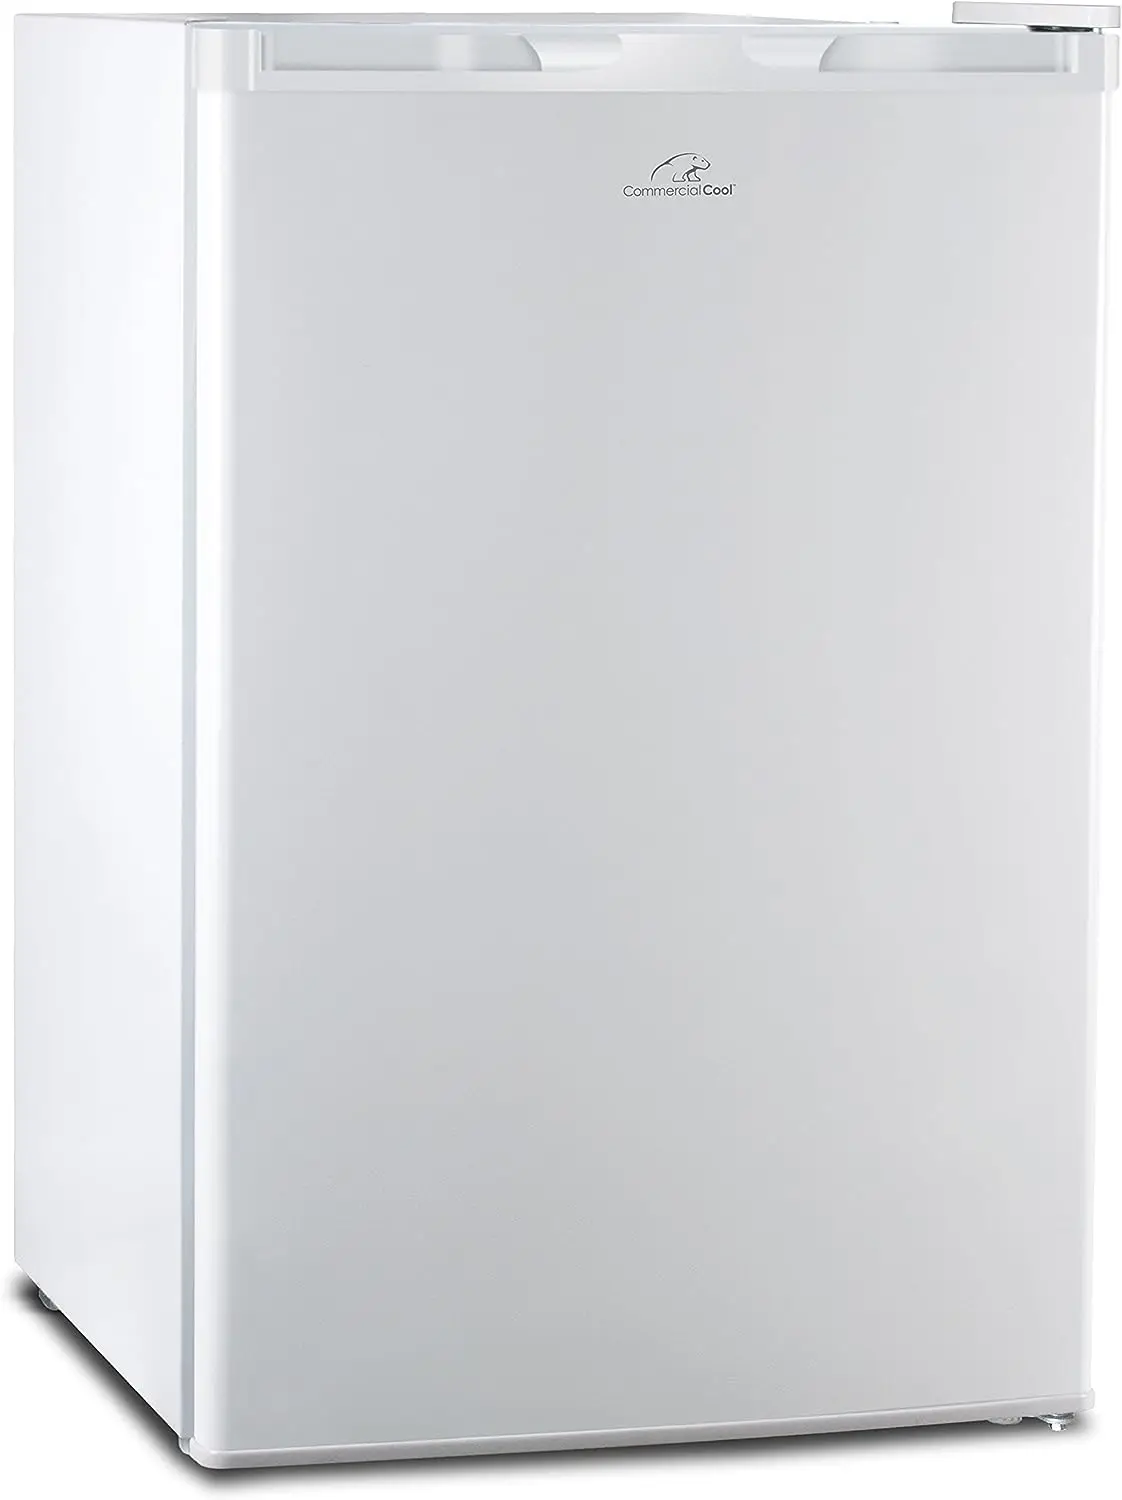 

Компактный однодверный холодильник и морозильник Cool CCR45W, 4,5 куб. Фут. Мини-холодильник, черный